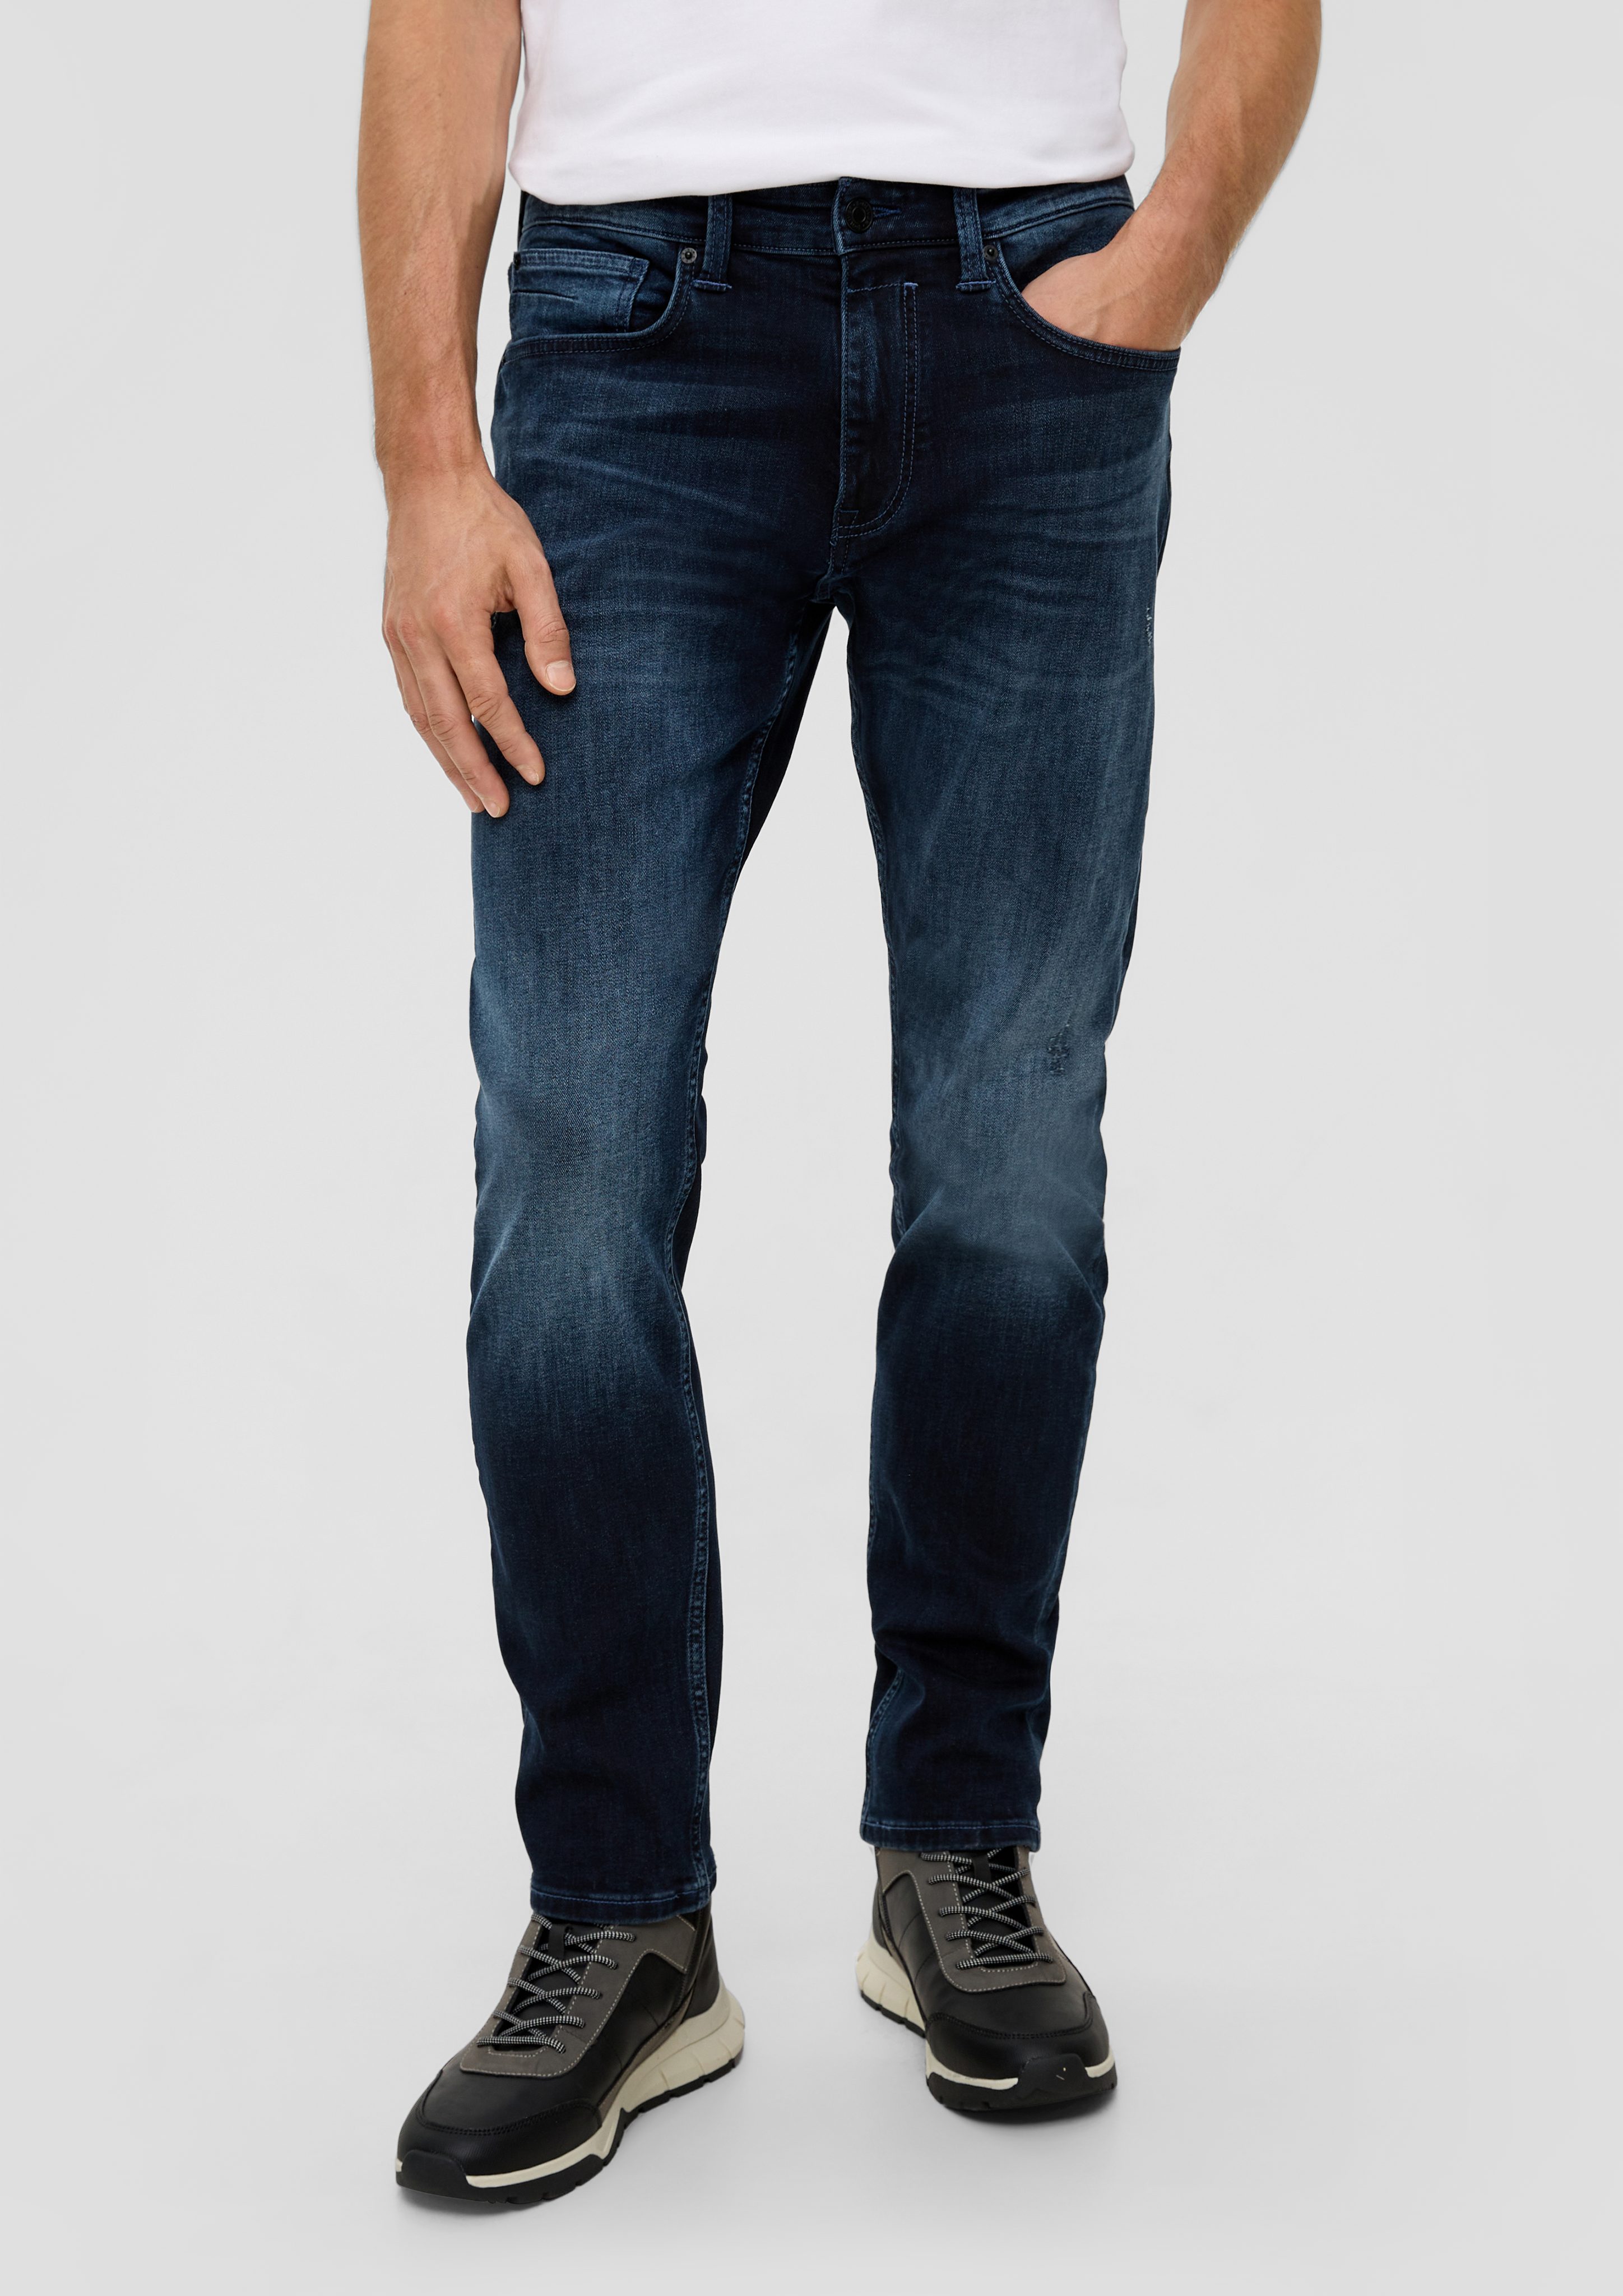 Rise / / tiefblau Waschung Tapered Regular Leder-Patch, Mid Fit Leg Stoffhose s.Oliver / / Jeans 5-Pocket-Stil